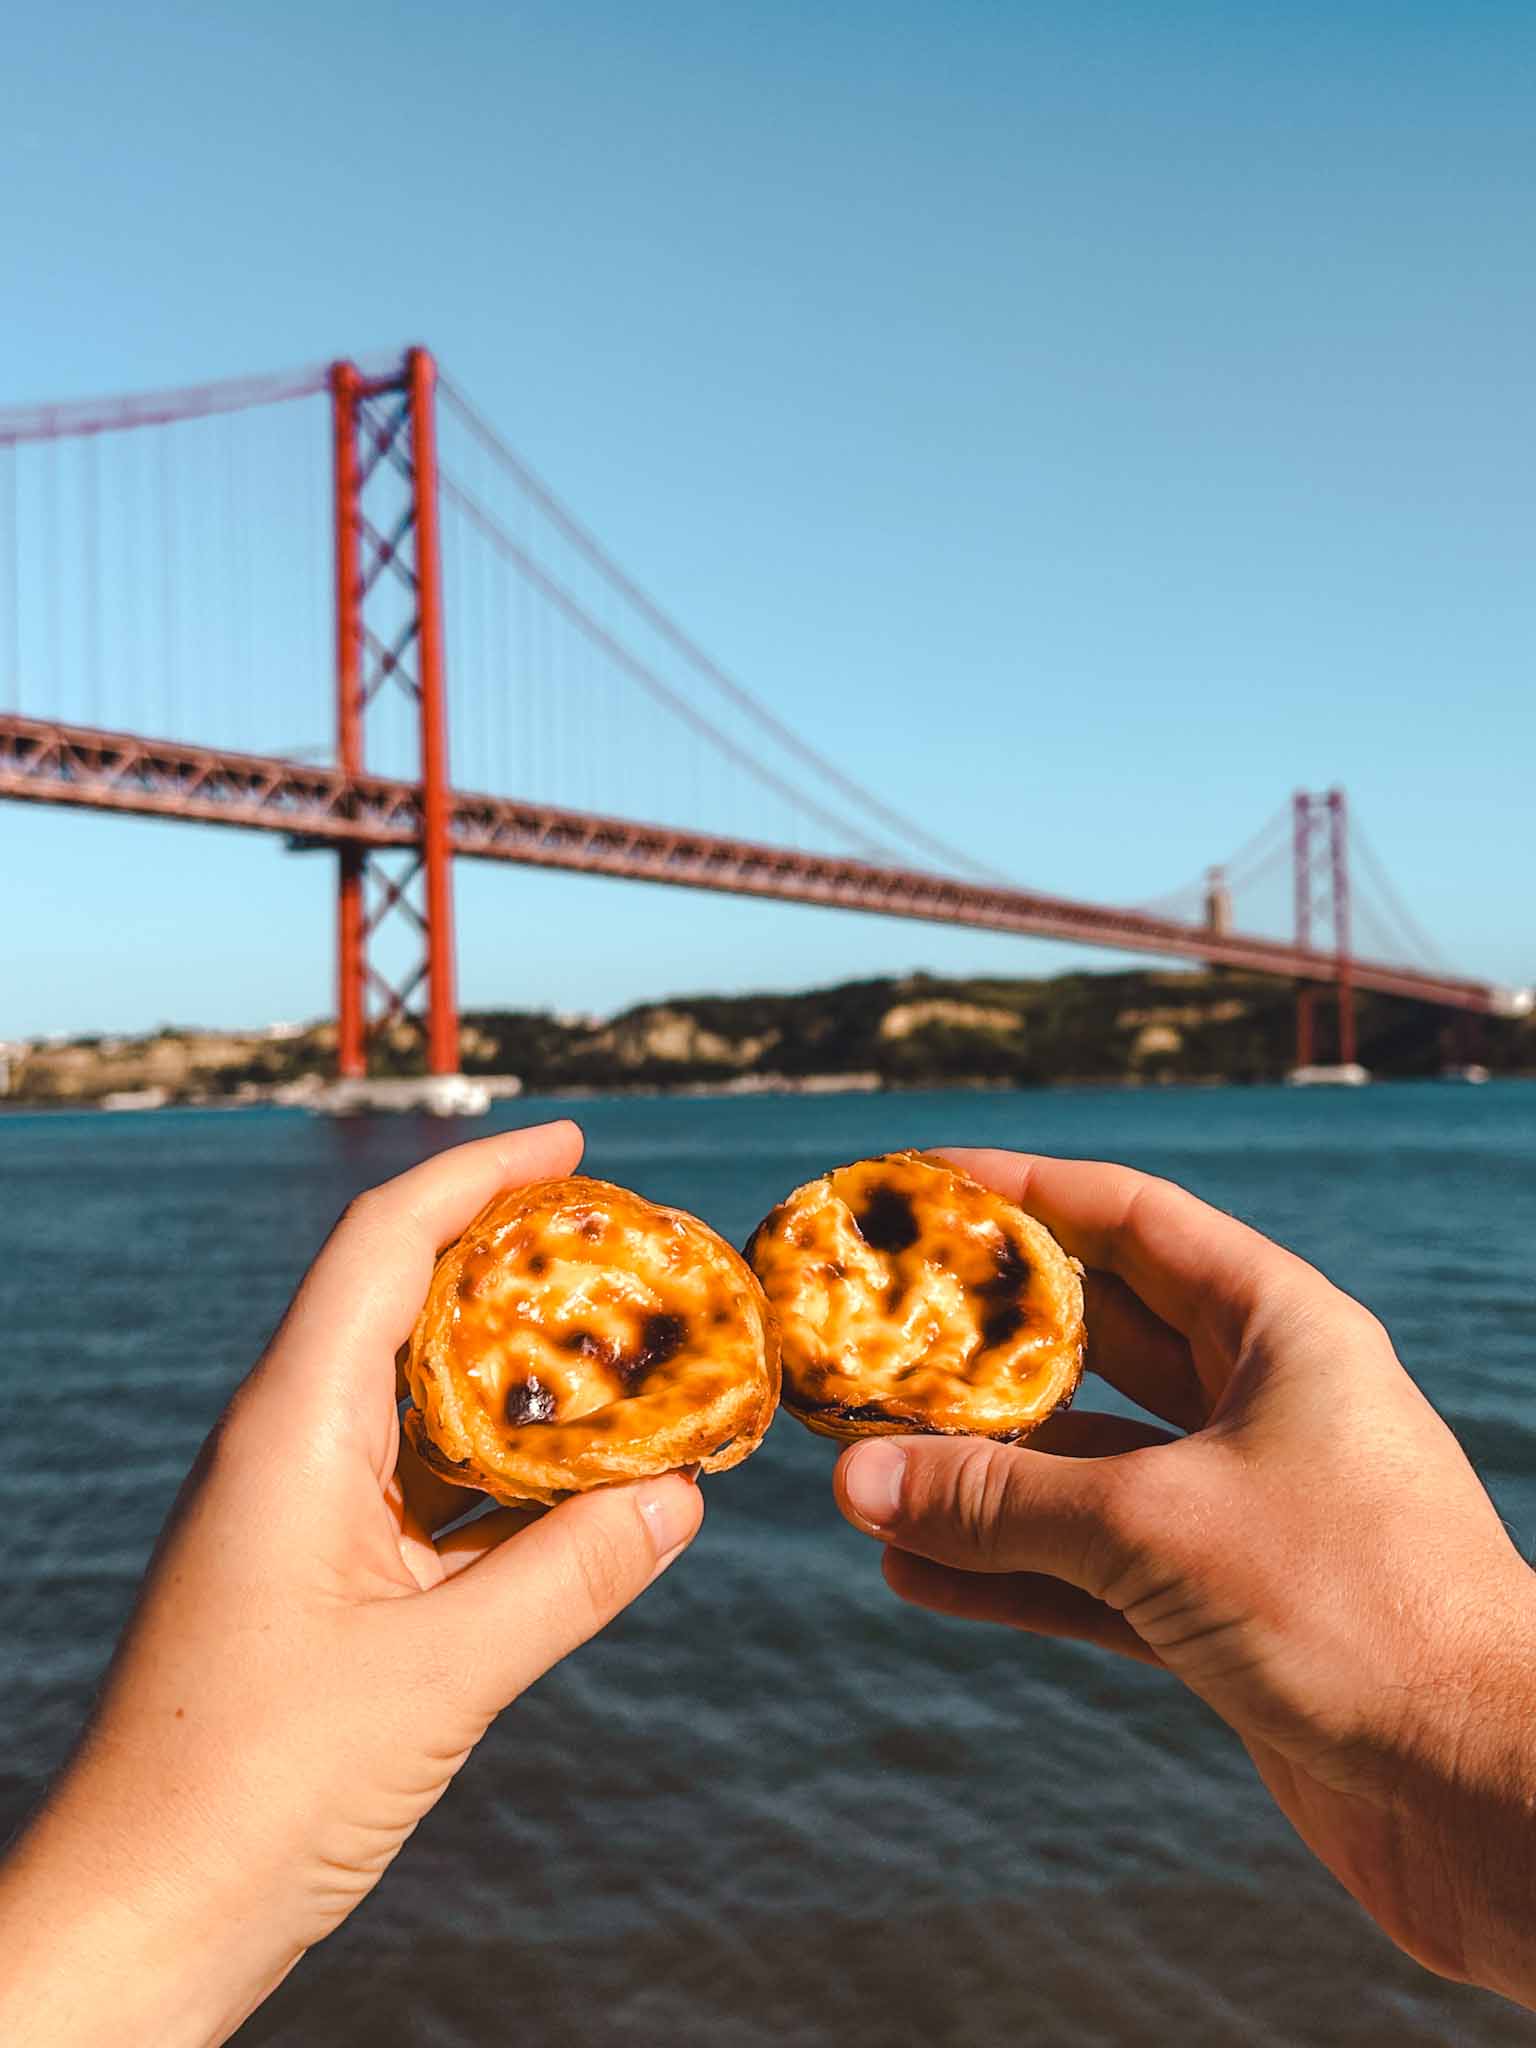 Best Instagram photo spots in Lisbon, Portugal - Ponte 25 de Abril